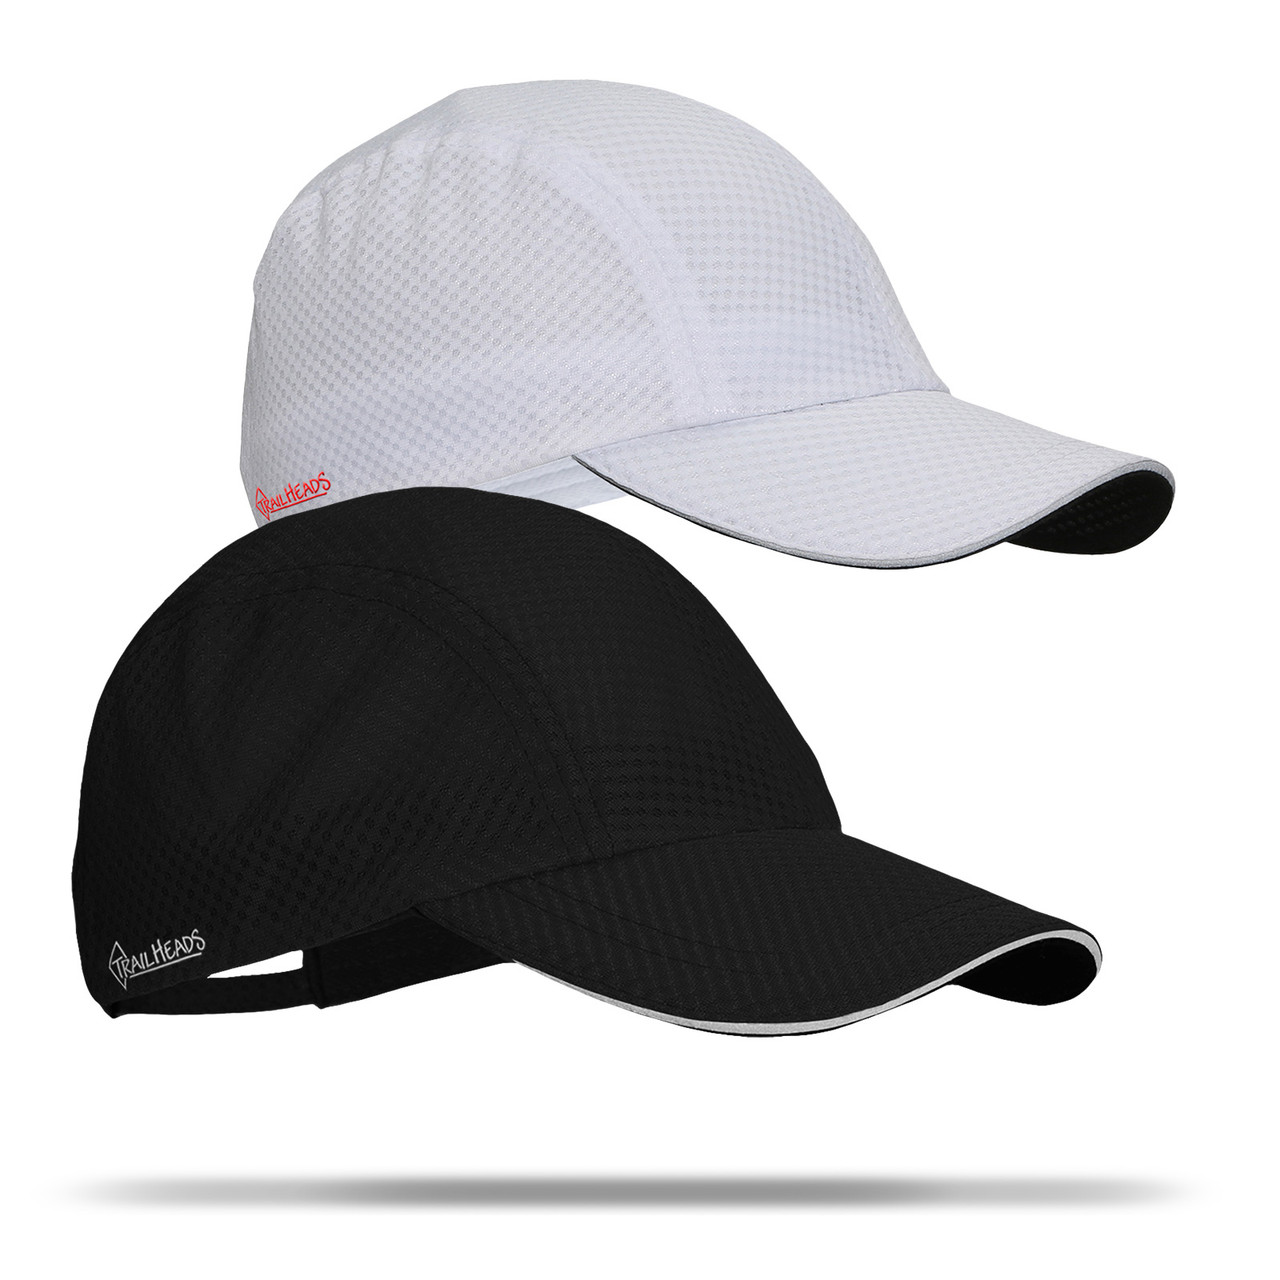 TrailHeads UV Protection Running Hat for Women - Black